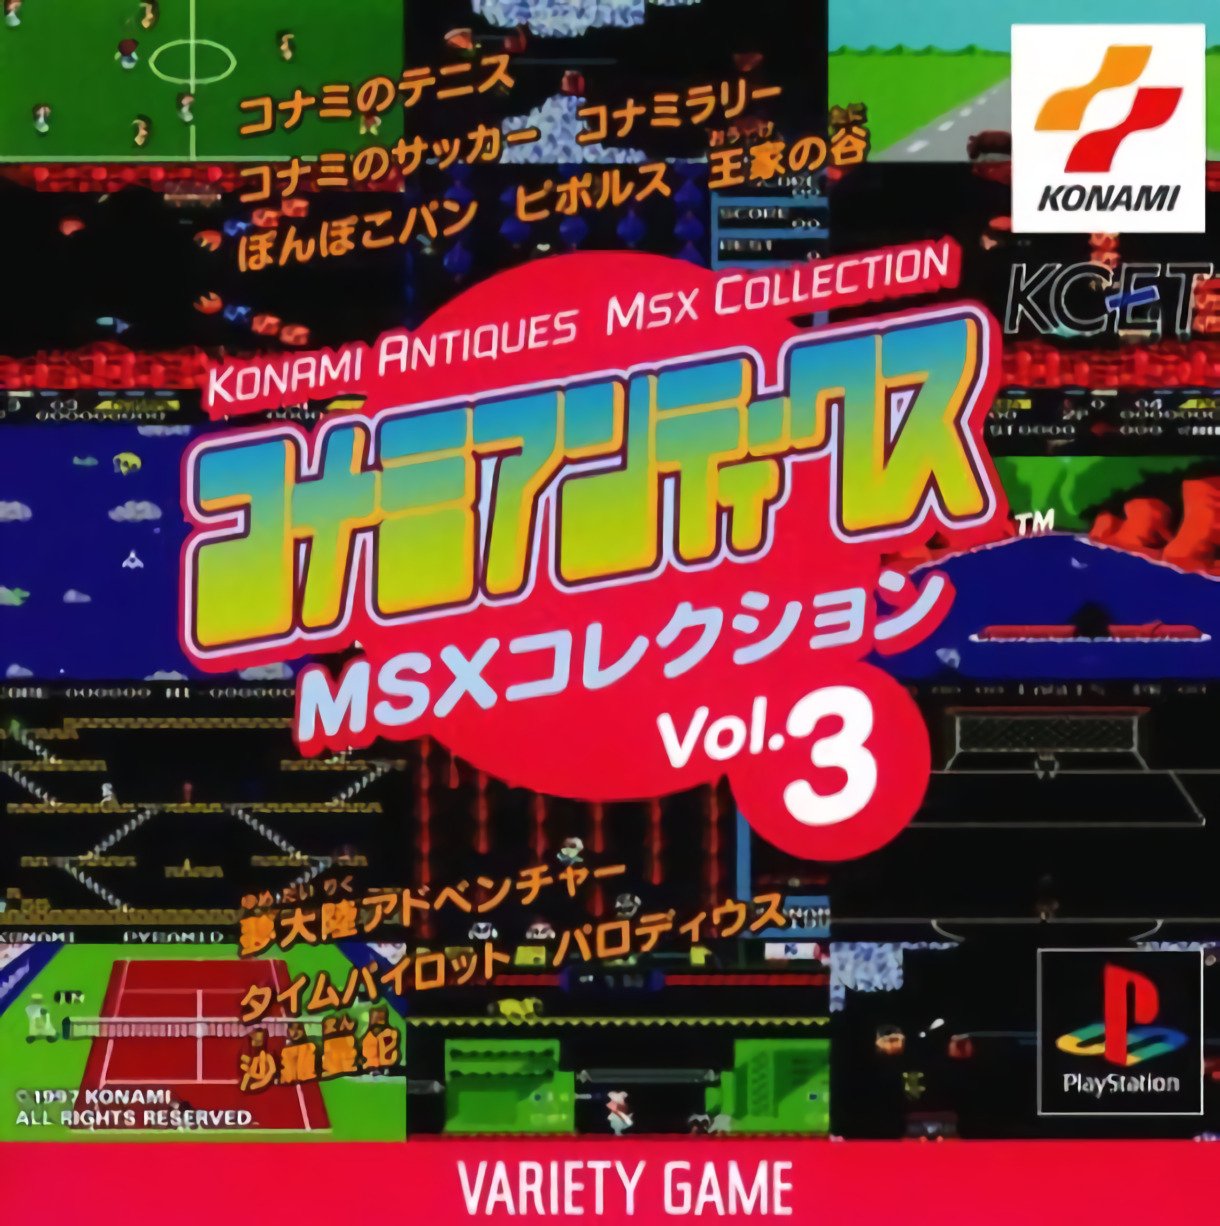 Konami Antiques MSX Collection Vol.3